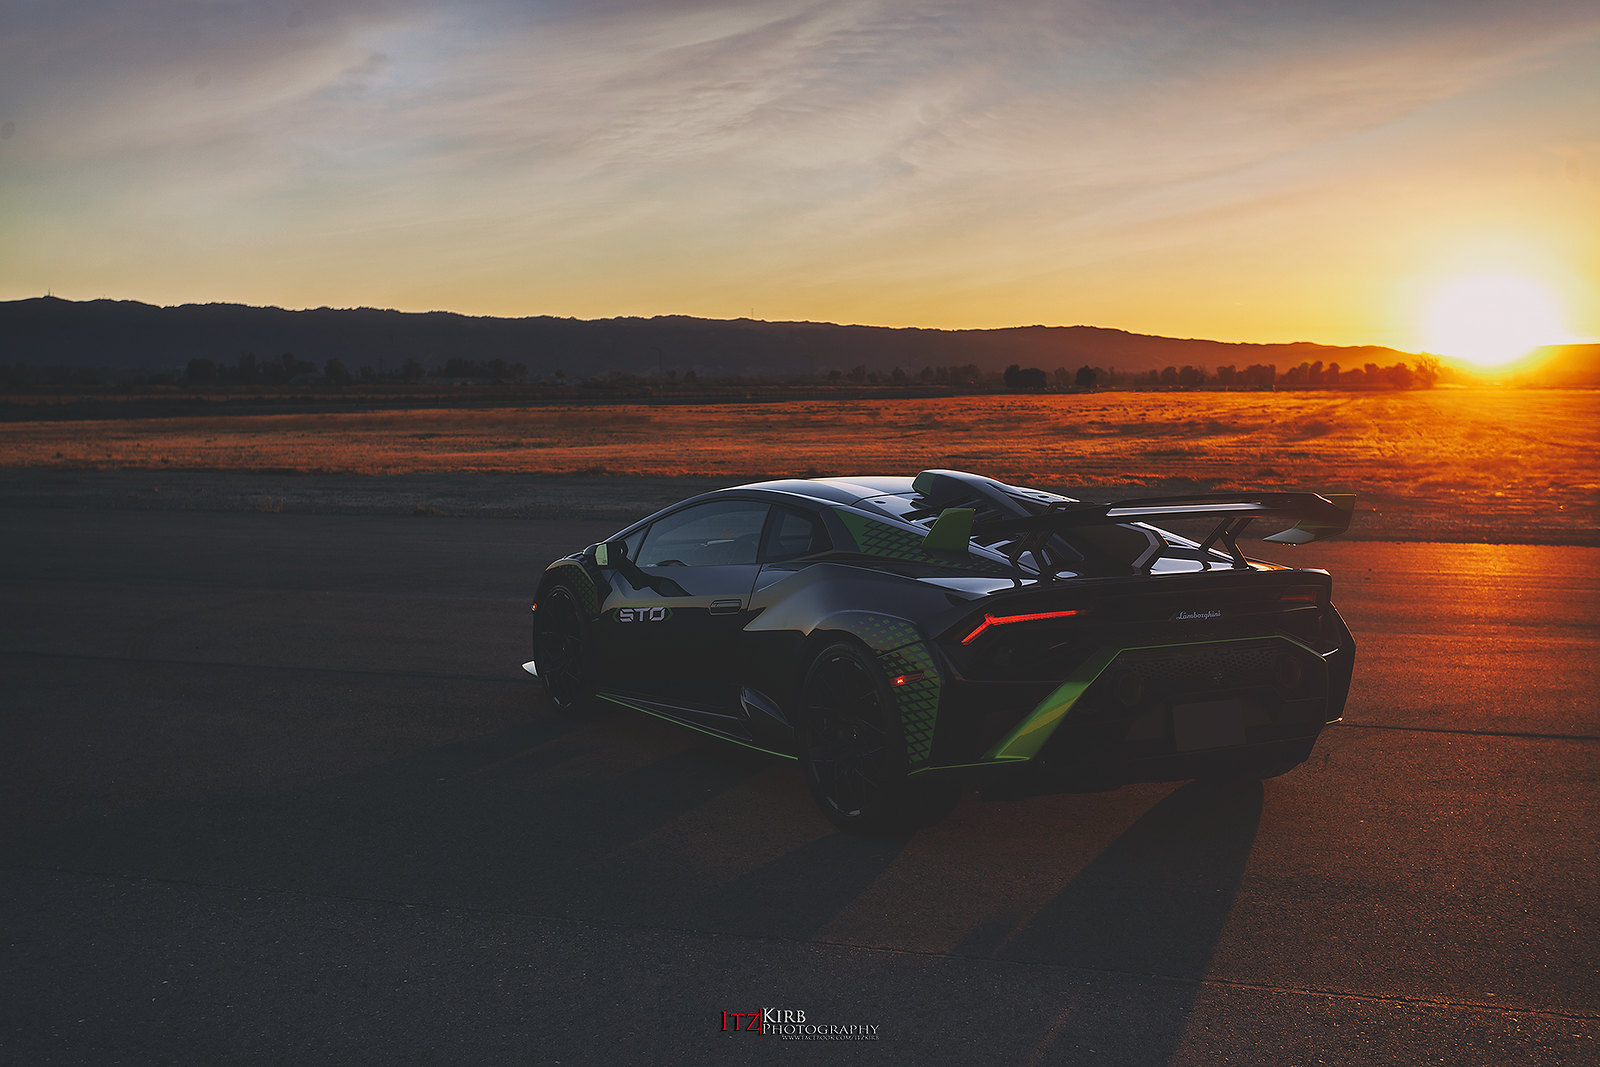 General 1600x1067 itzkirb car Lamborghini Lamborghini Huracan sunset sunset glow italian cars Volkswagen Group